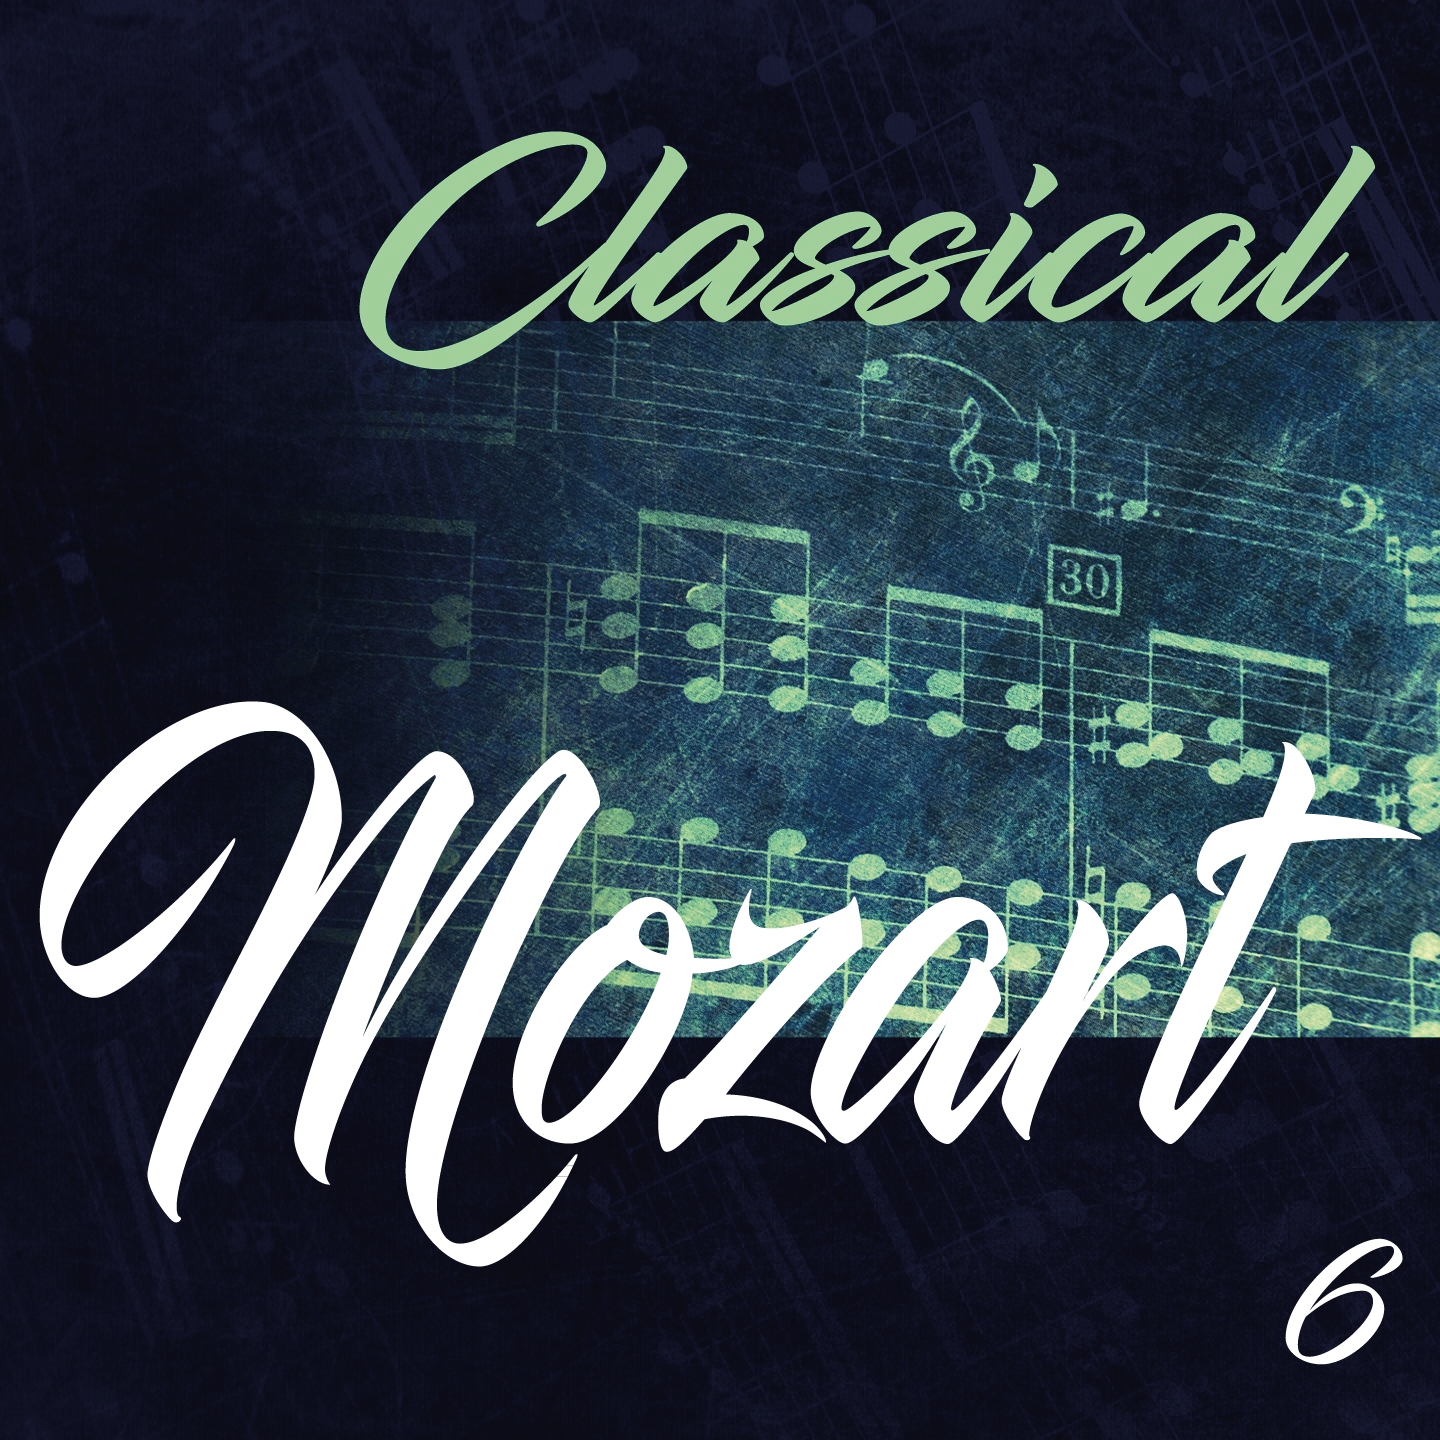 Classical Mozart 6